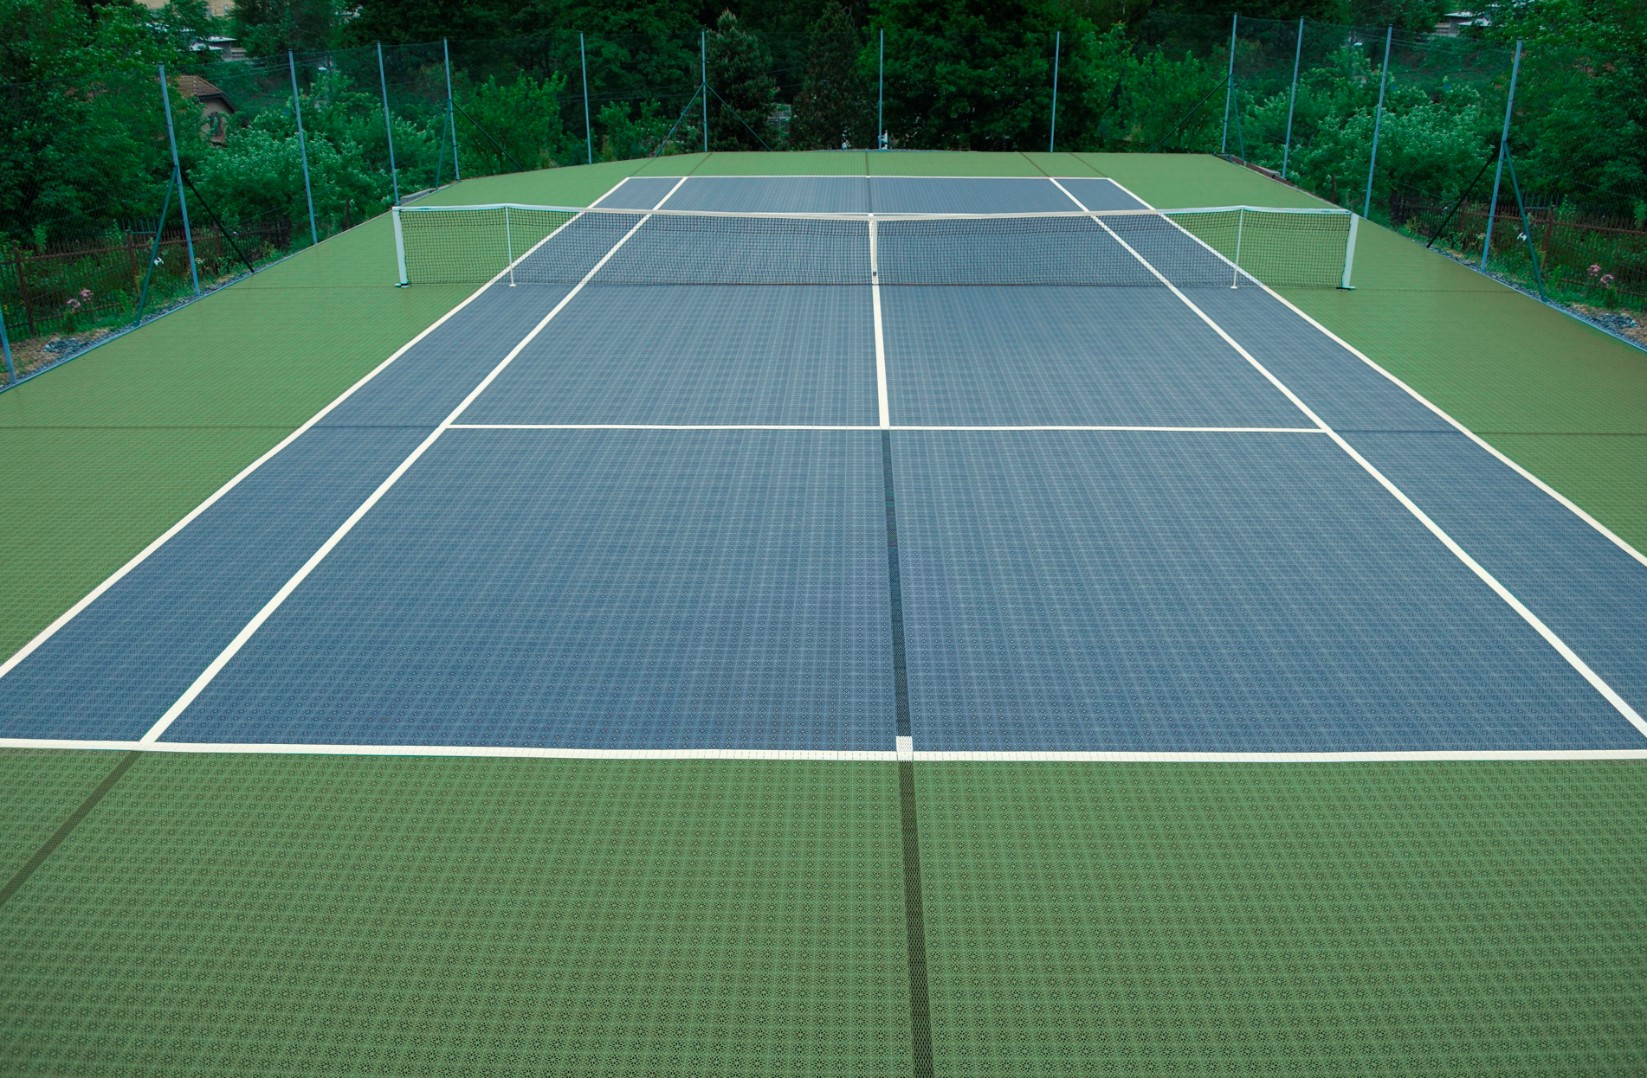 2 теннисных корта. Покрытие теннис корт Хард. Сетка теннисная Court Royal tn20 (корт Роял, тн20) (черная). Покрытие теннисного корта. Резиновое покрытие для теннисного корта.